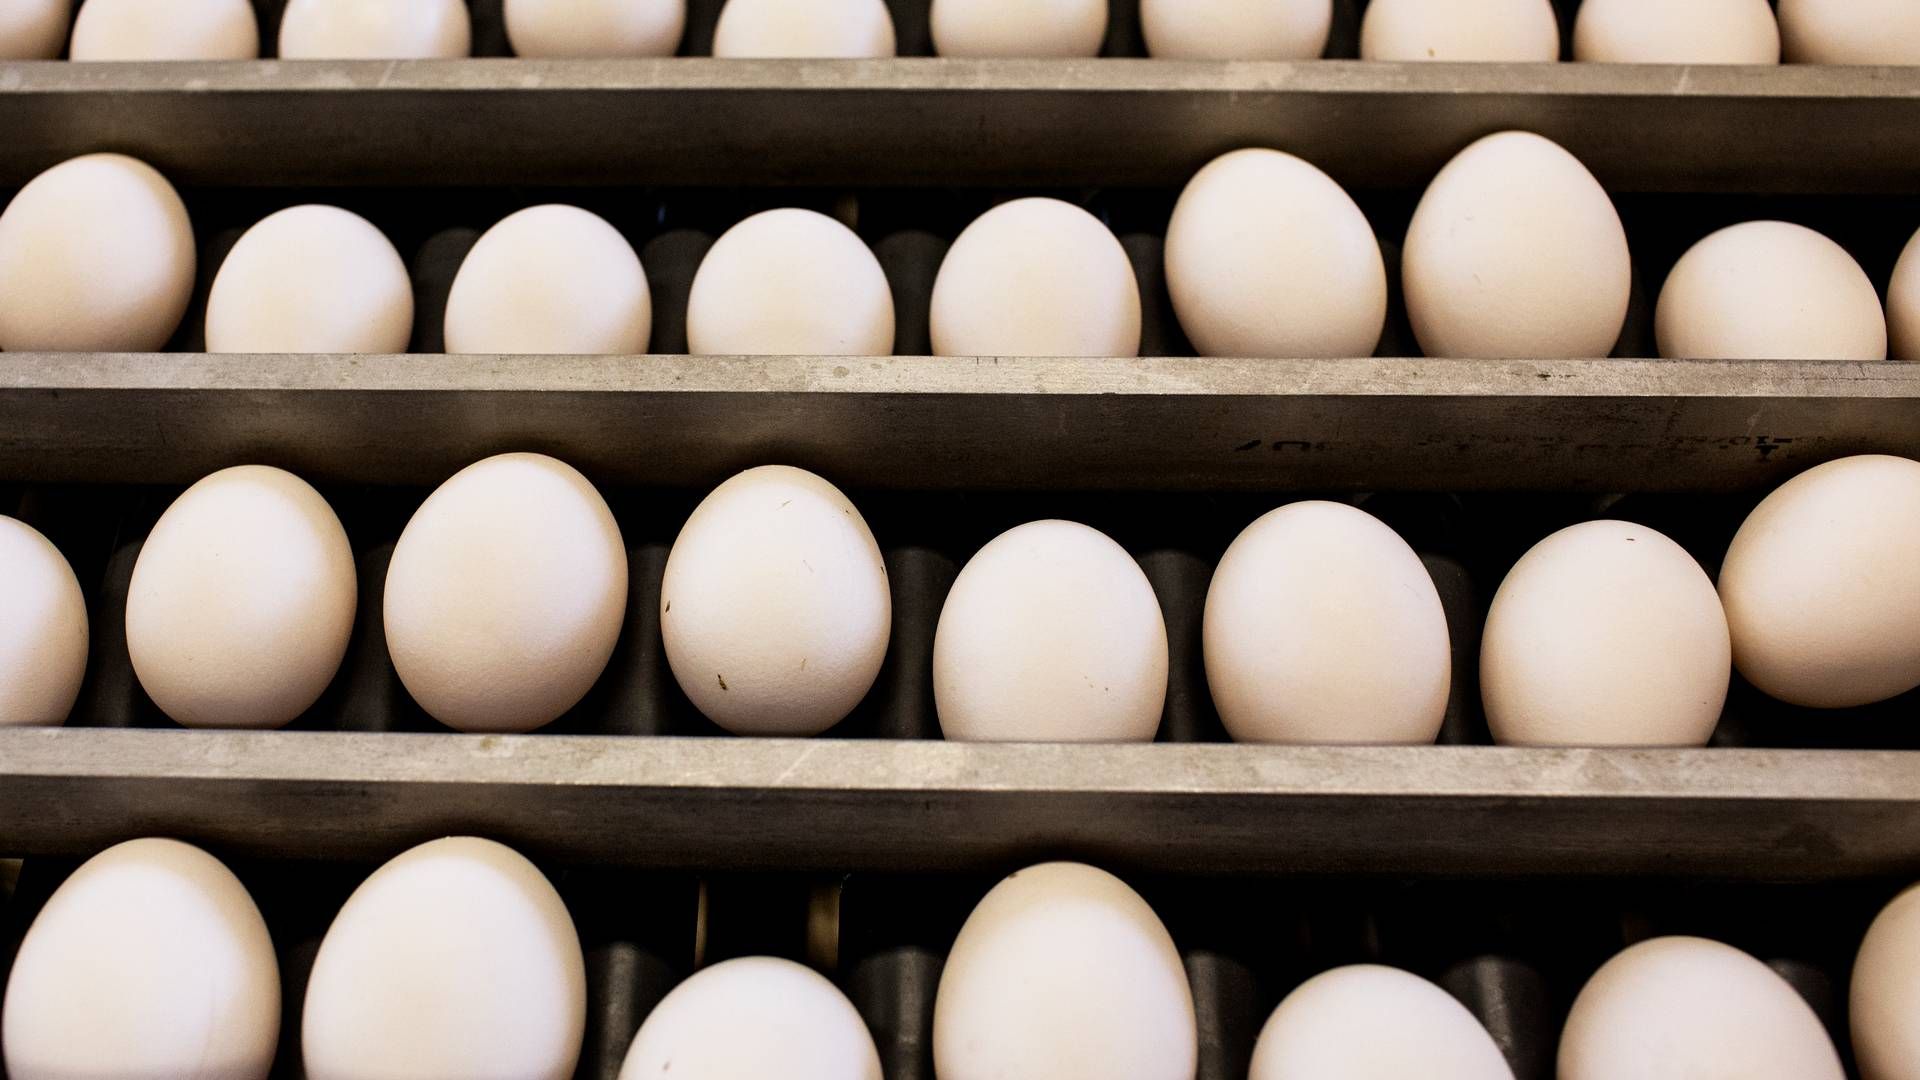 Ukrainske æg, kylling og korn har efter den russiske invasion oplevet lettere eksportadgang til Europa. Ifølge brancherne kan det få omfattende konsekvenser. | Foto: Sofia Busk